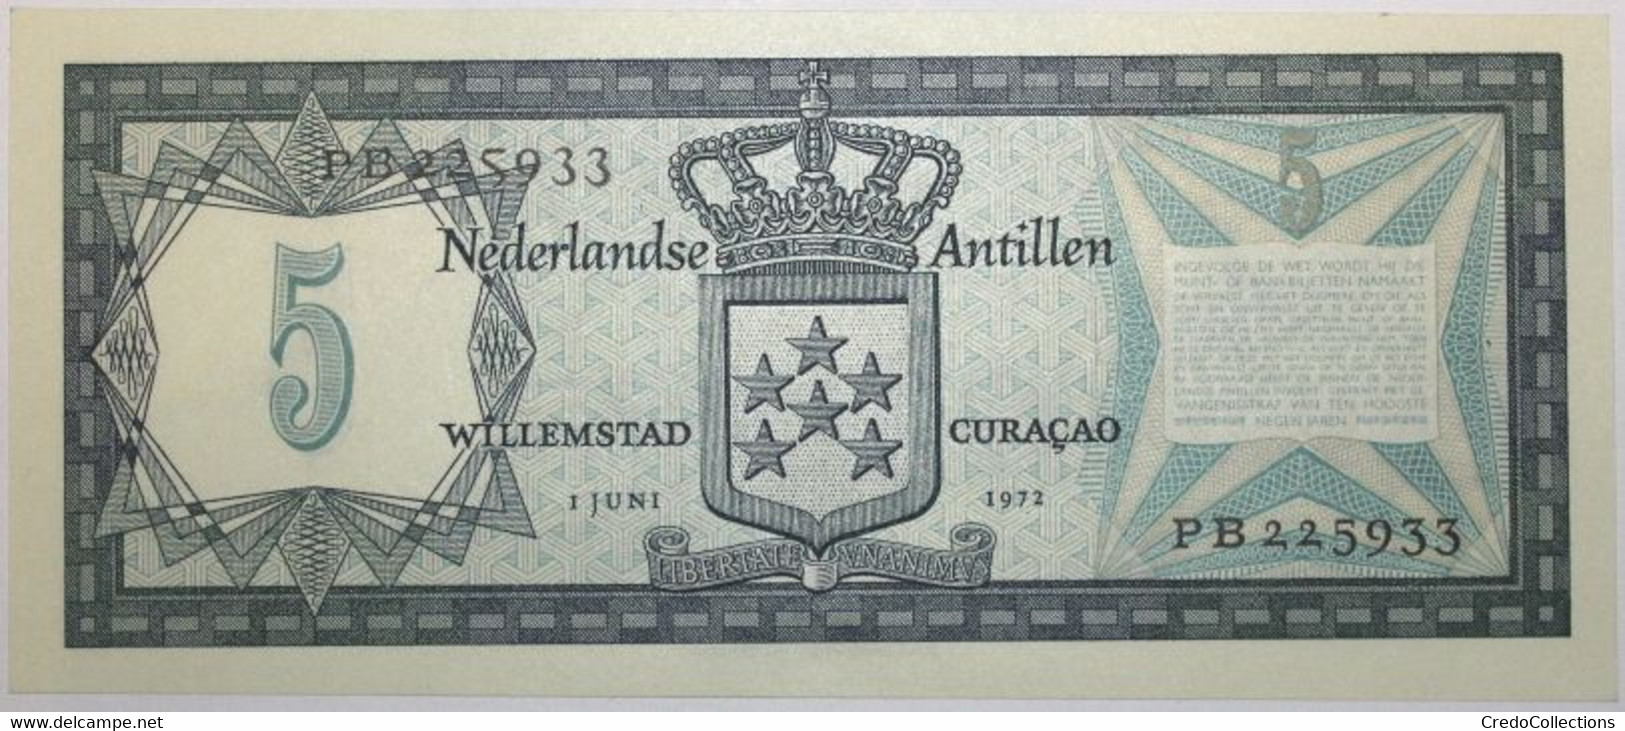 Antilles Néerlandaises - 5 Gulden - 1972 - PICK 8b - SPL - Netherlands Antilles (...-1986)